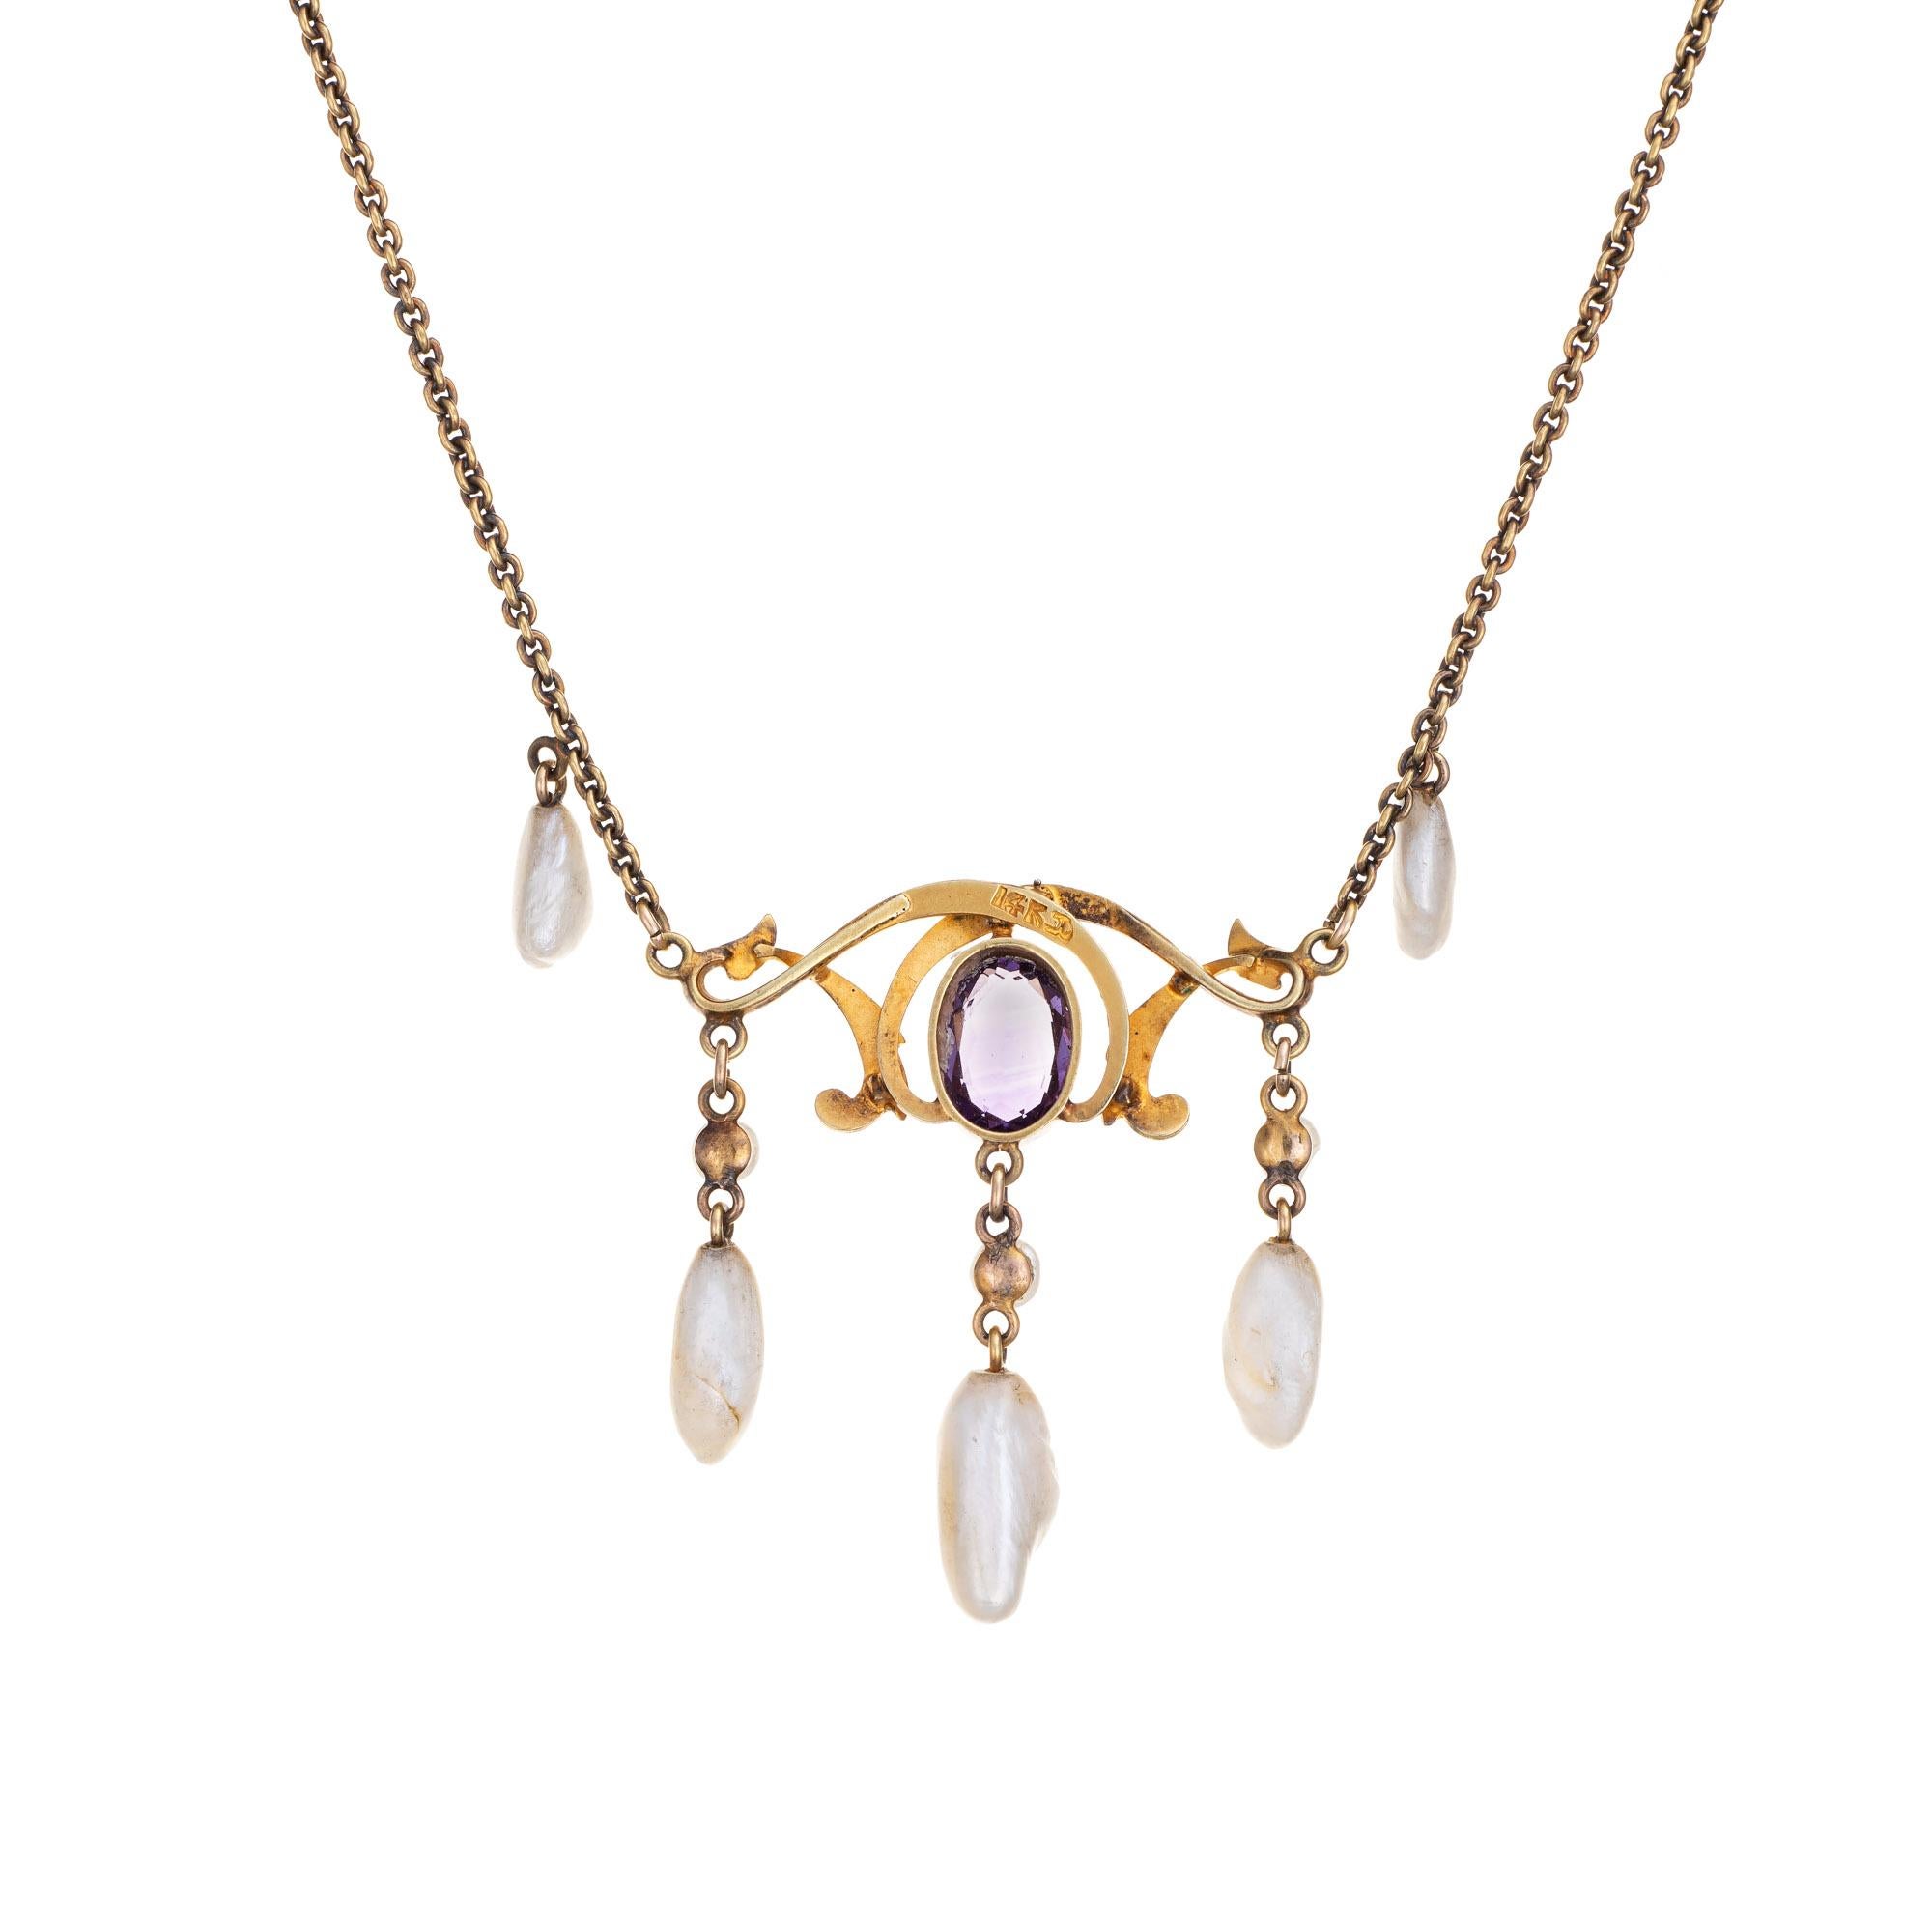 Collier goutte élégant et finement détaillé de style Art Nouveau (circa 1900s à 1910s) fabriqué en or jaune 14 carats. 

Le collier est composé d'une améthyste d'environ 0,75 carat, de perles en dents de scie de 6 mm x 3,5 mm à 9 mm x 3 mm et